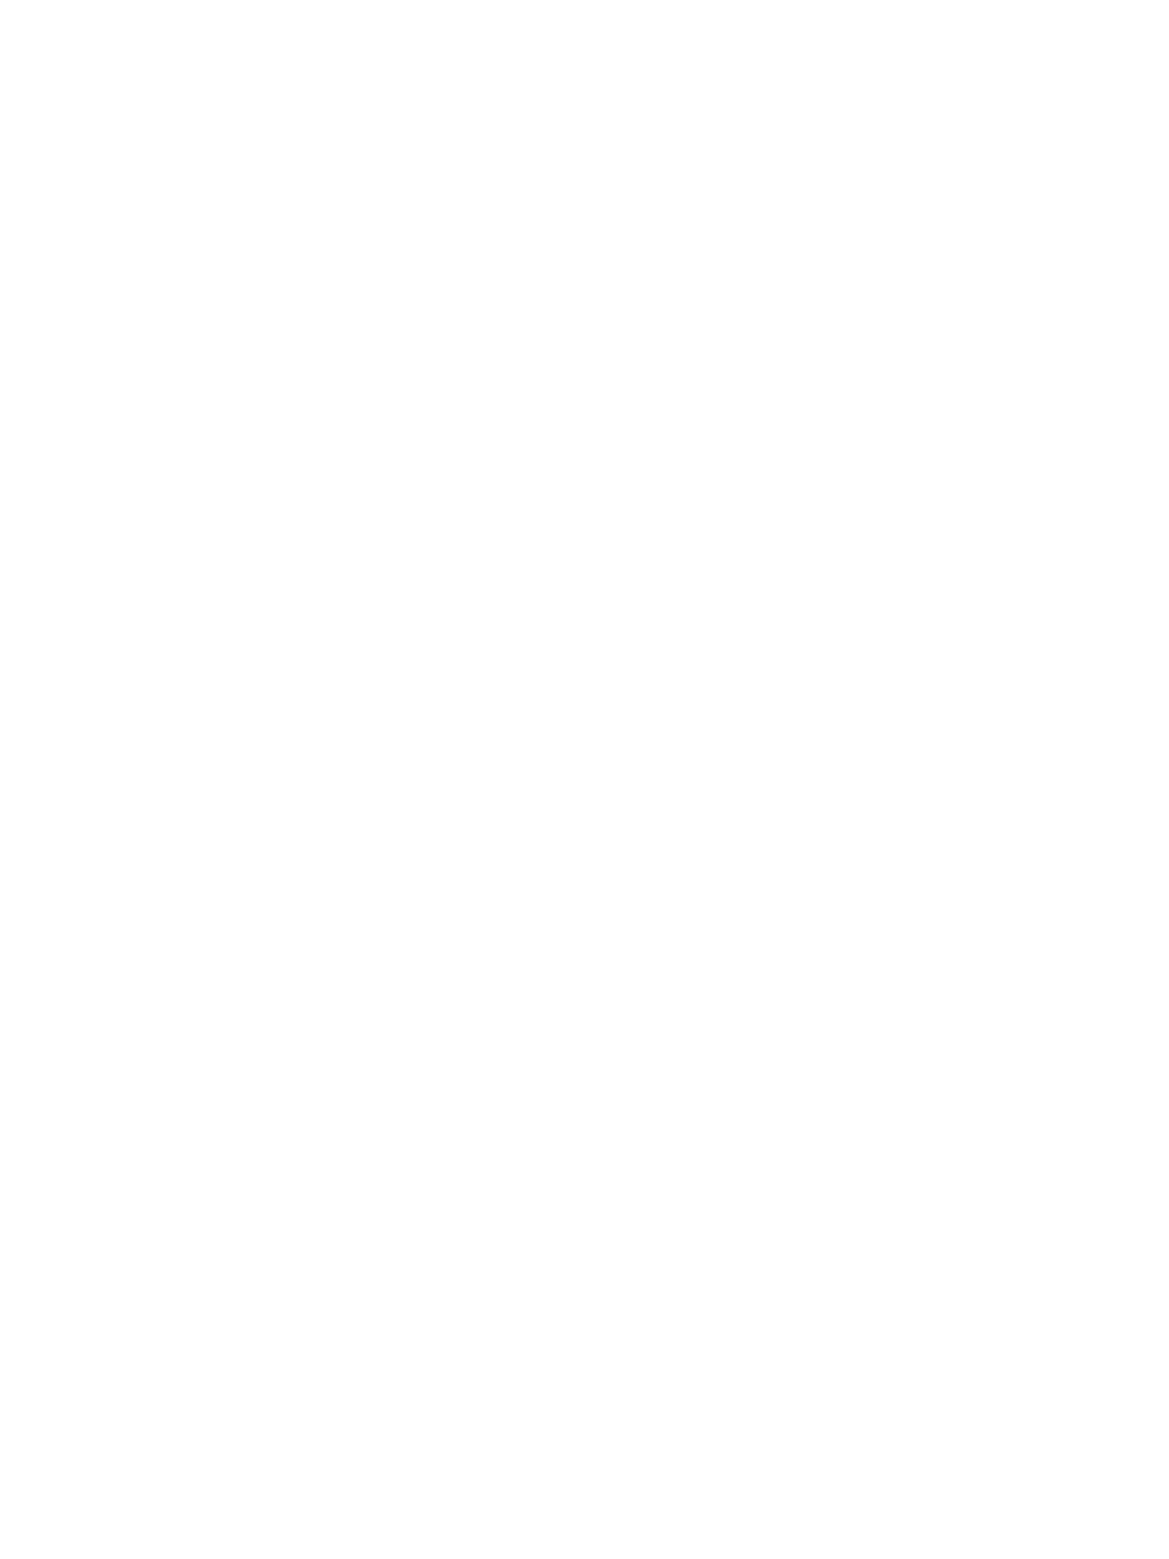 Siemens logo for dark backgrounds (transparent PNG)